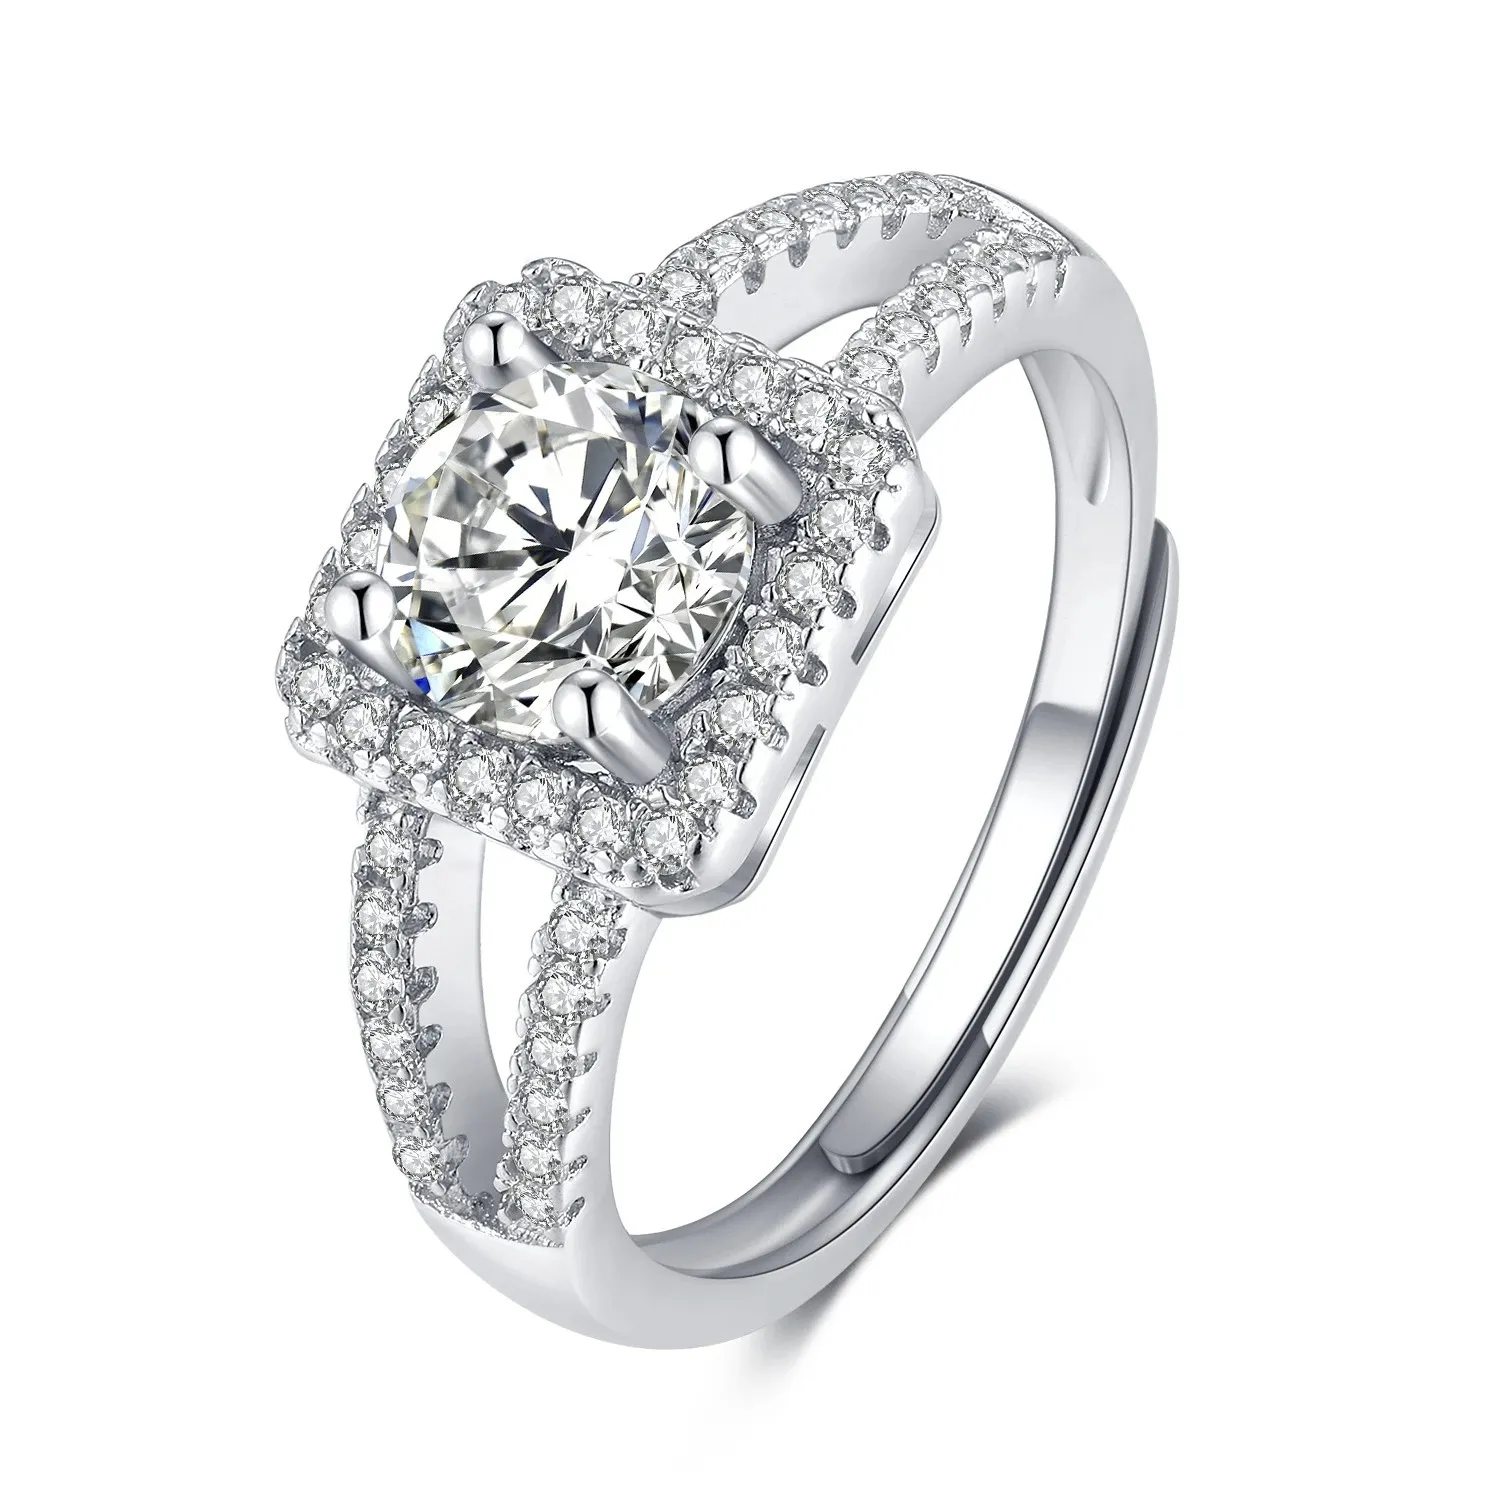 Design creativo S925 Silver Simulation Moissanite Square Diamond Ring Proposta regolabile Gioielli da sposa Regalo di compleanno